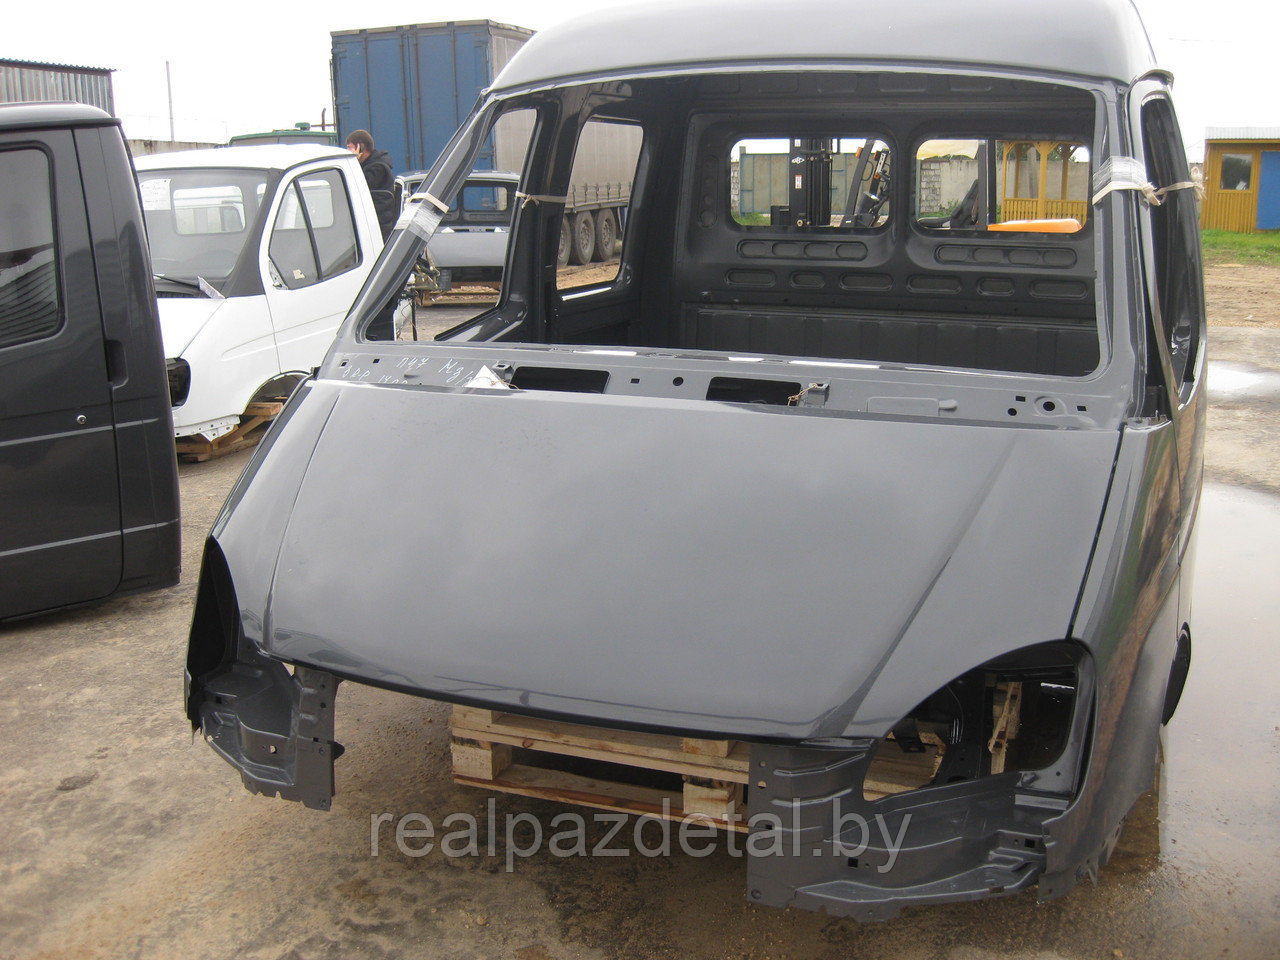 Кабина ГАЗ-33023  "Дуэт" в металле окрашенная прост.цвет